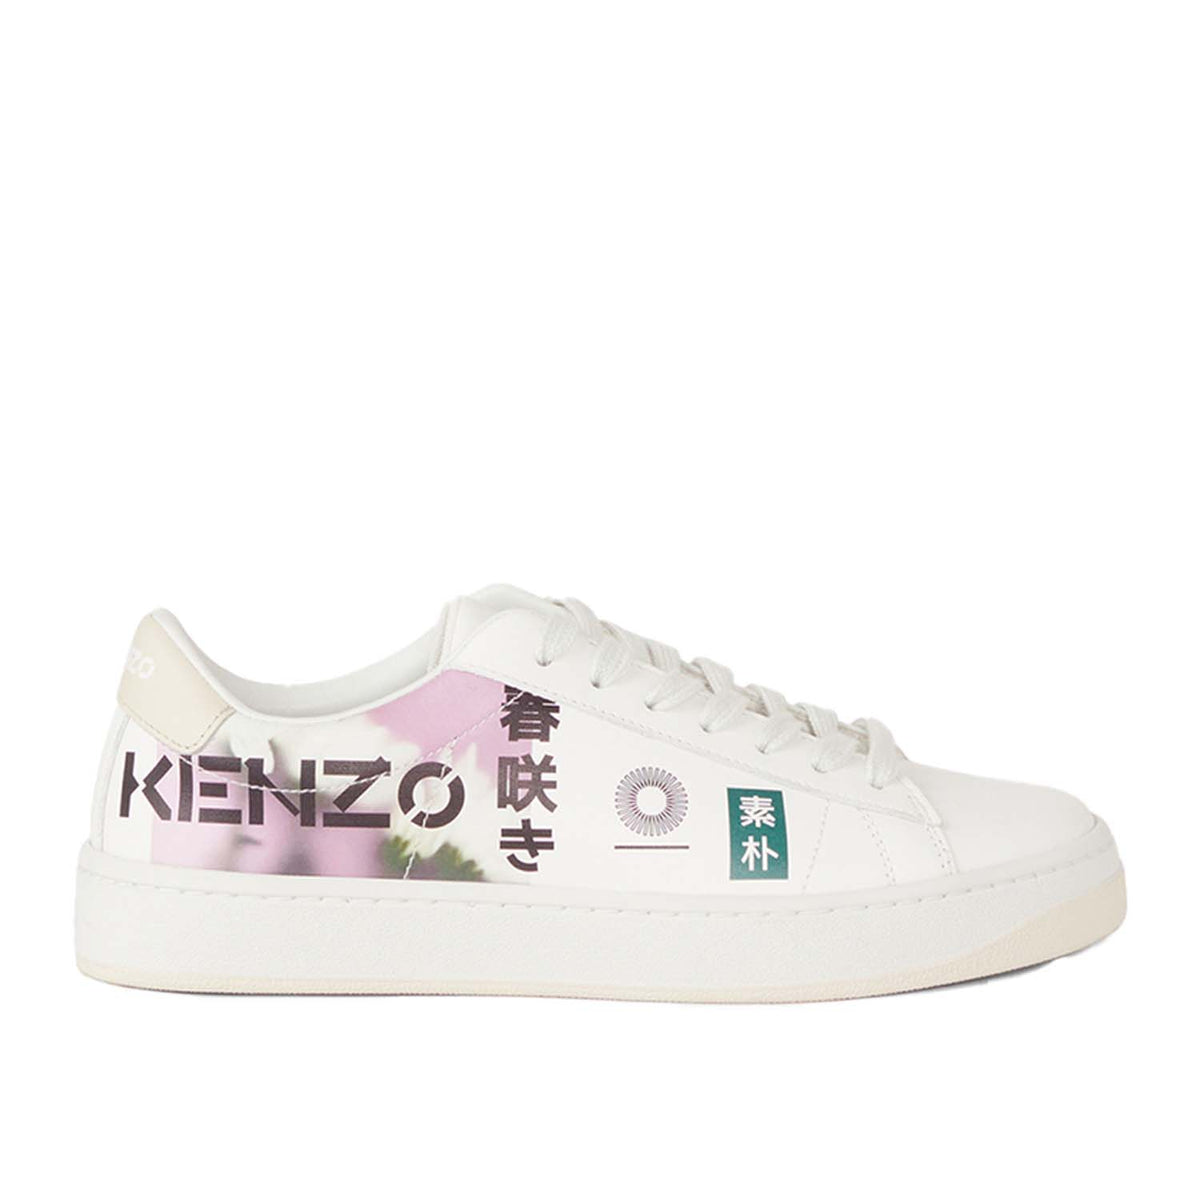 Kenzo Women's Kourt K Logo 'Floral' Sneakers